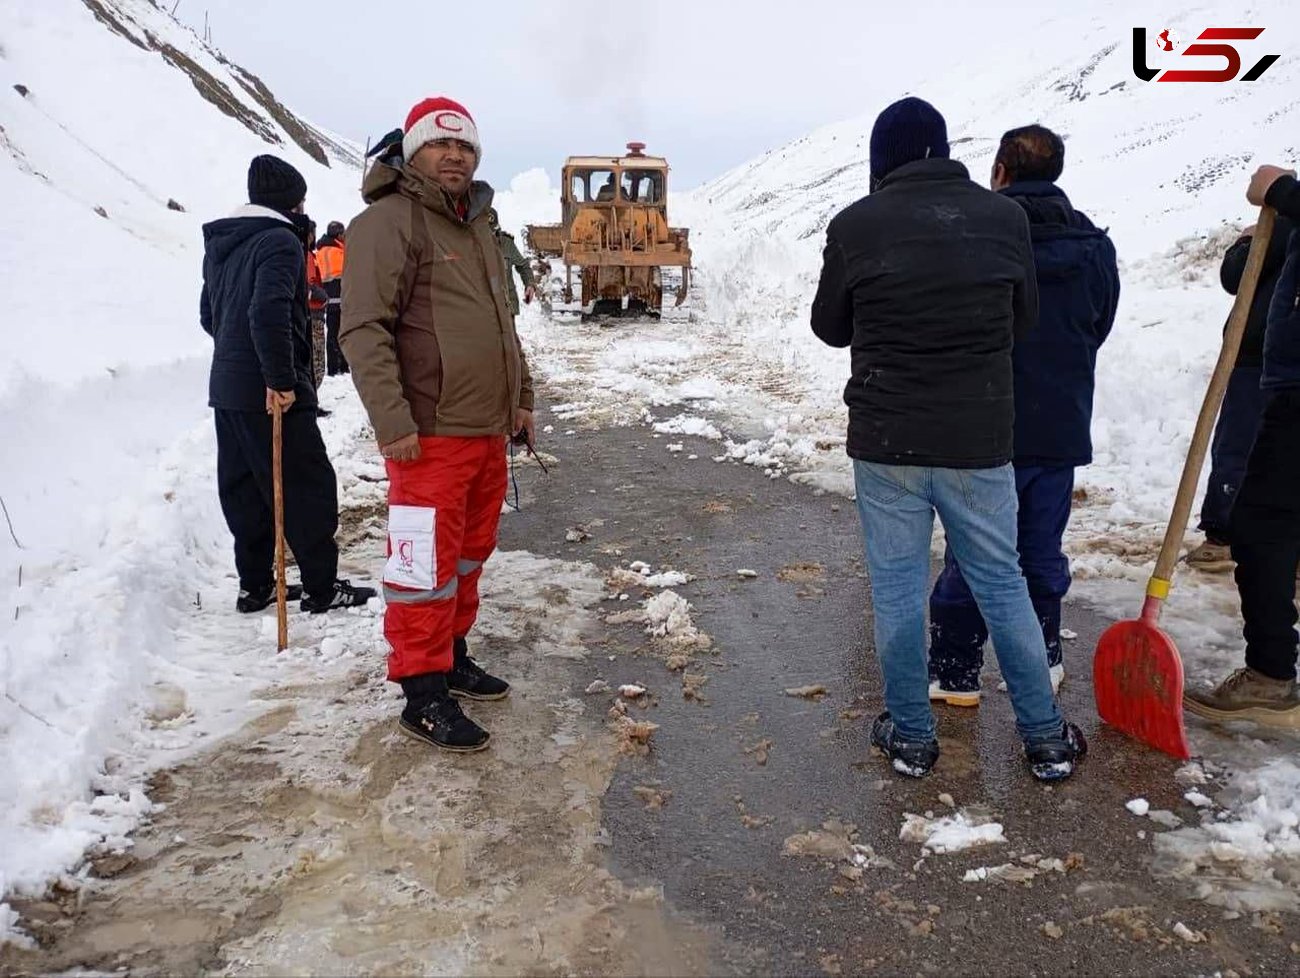 امدادرسانی به روستاهای بخش صوفیان در سومین روز ادامه دارد